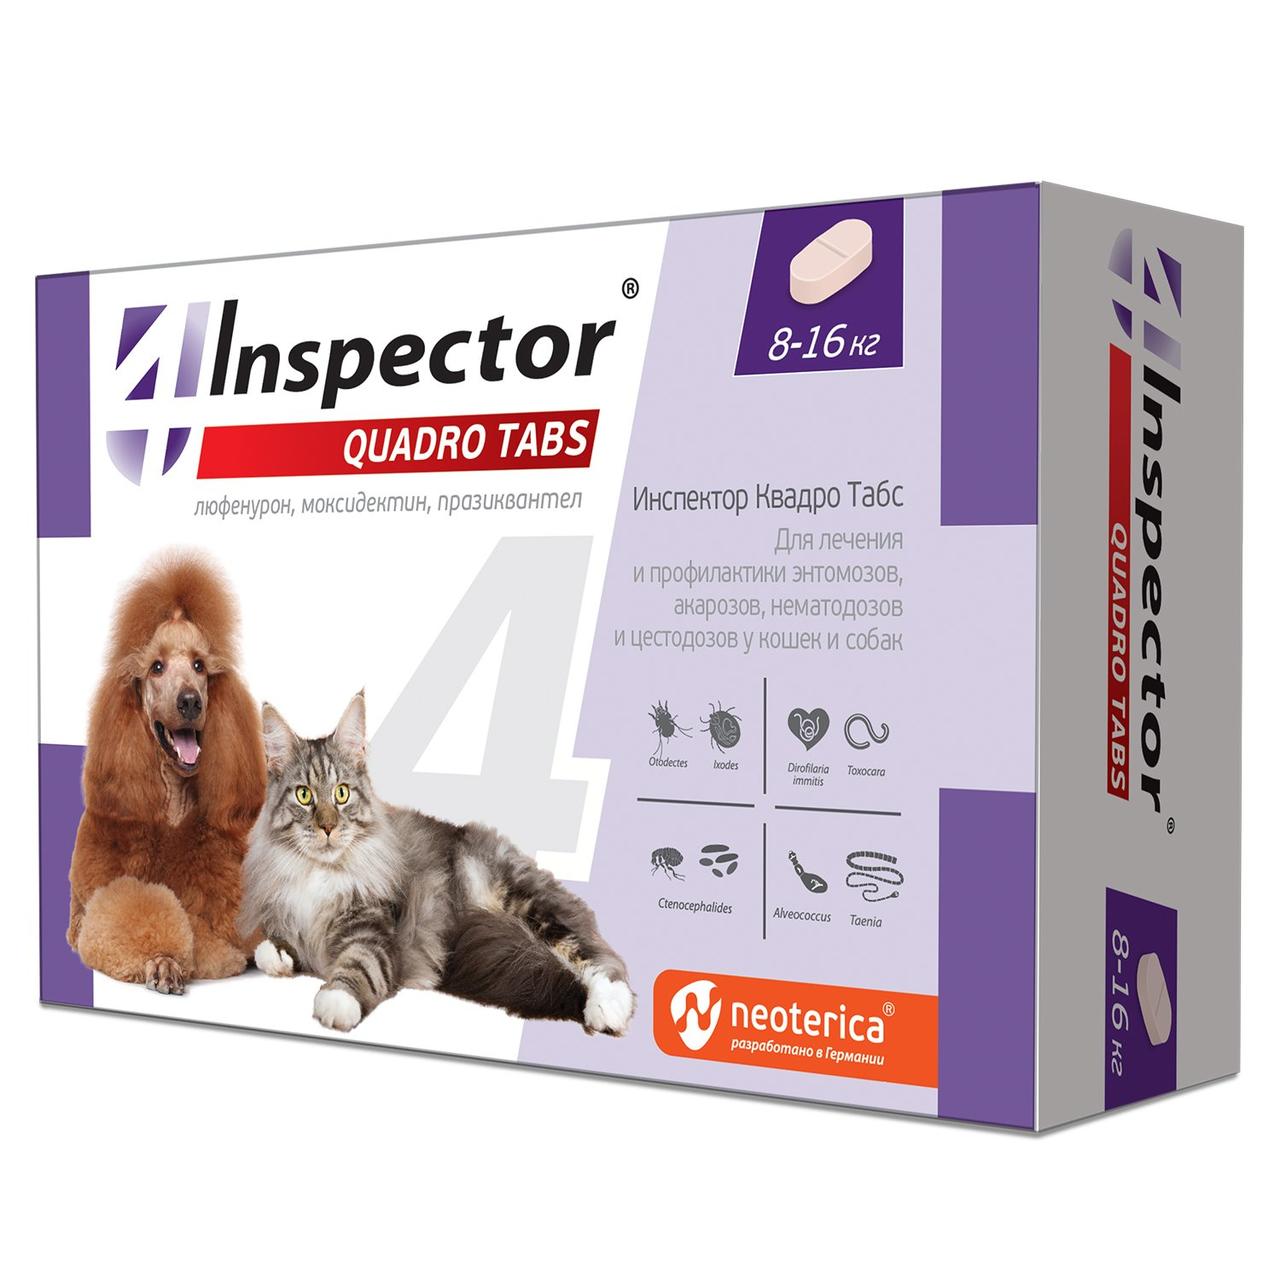 Inspector Quadro Tabs таблетки от паразитов для кошек и собак 8-16 кг